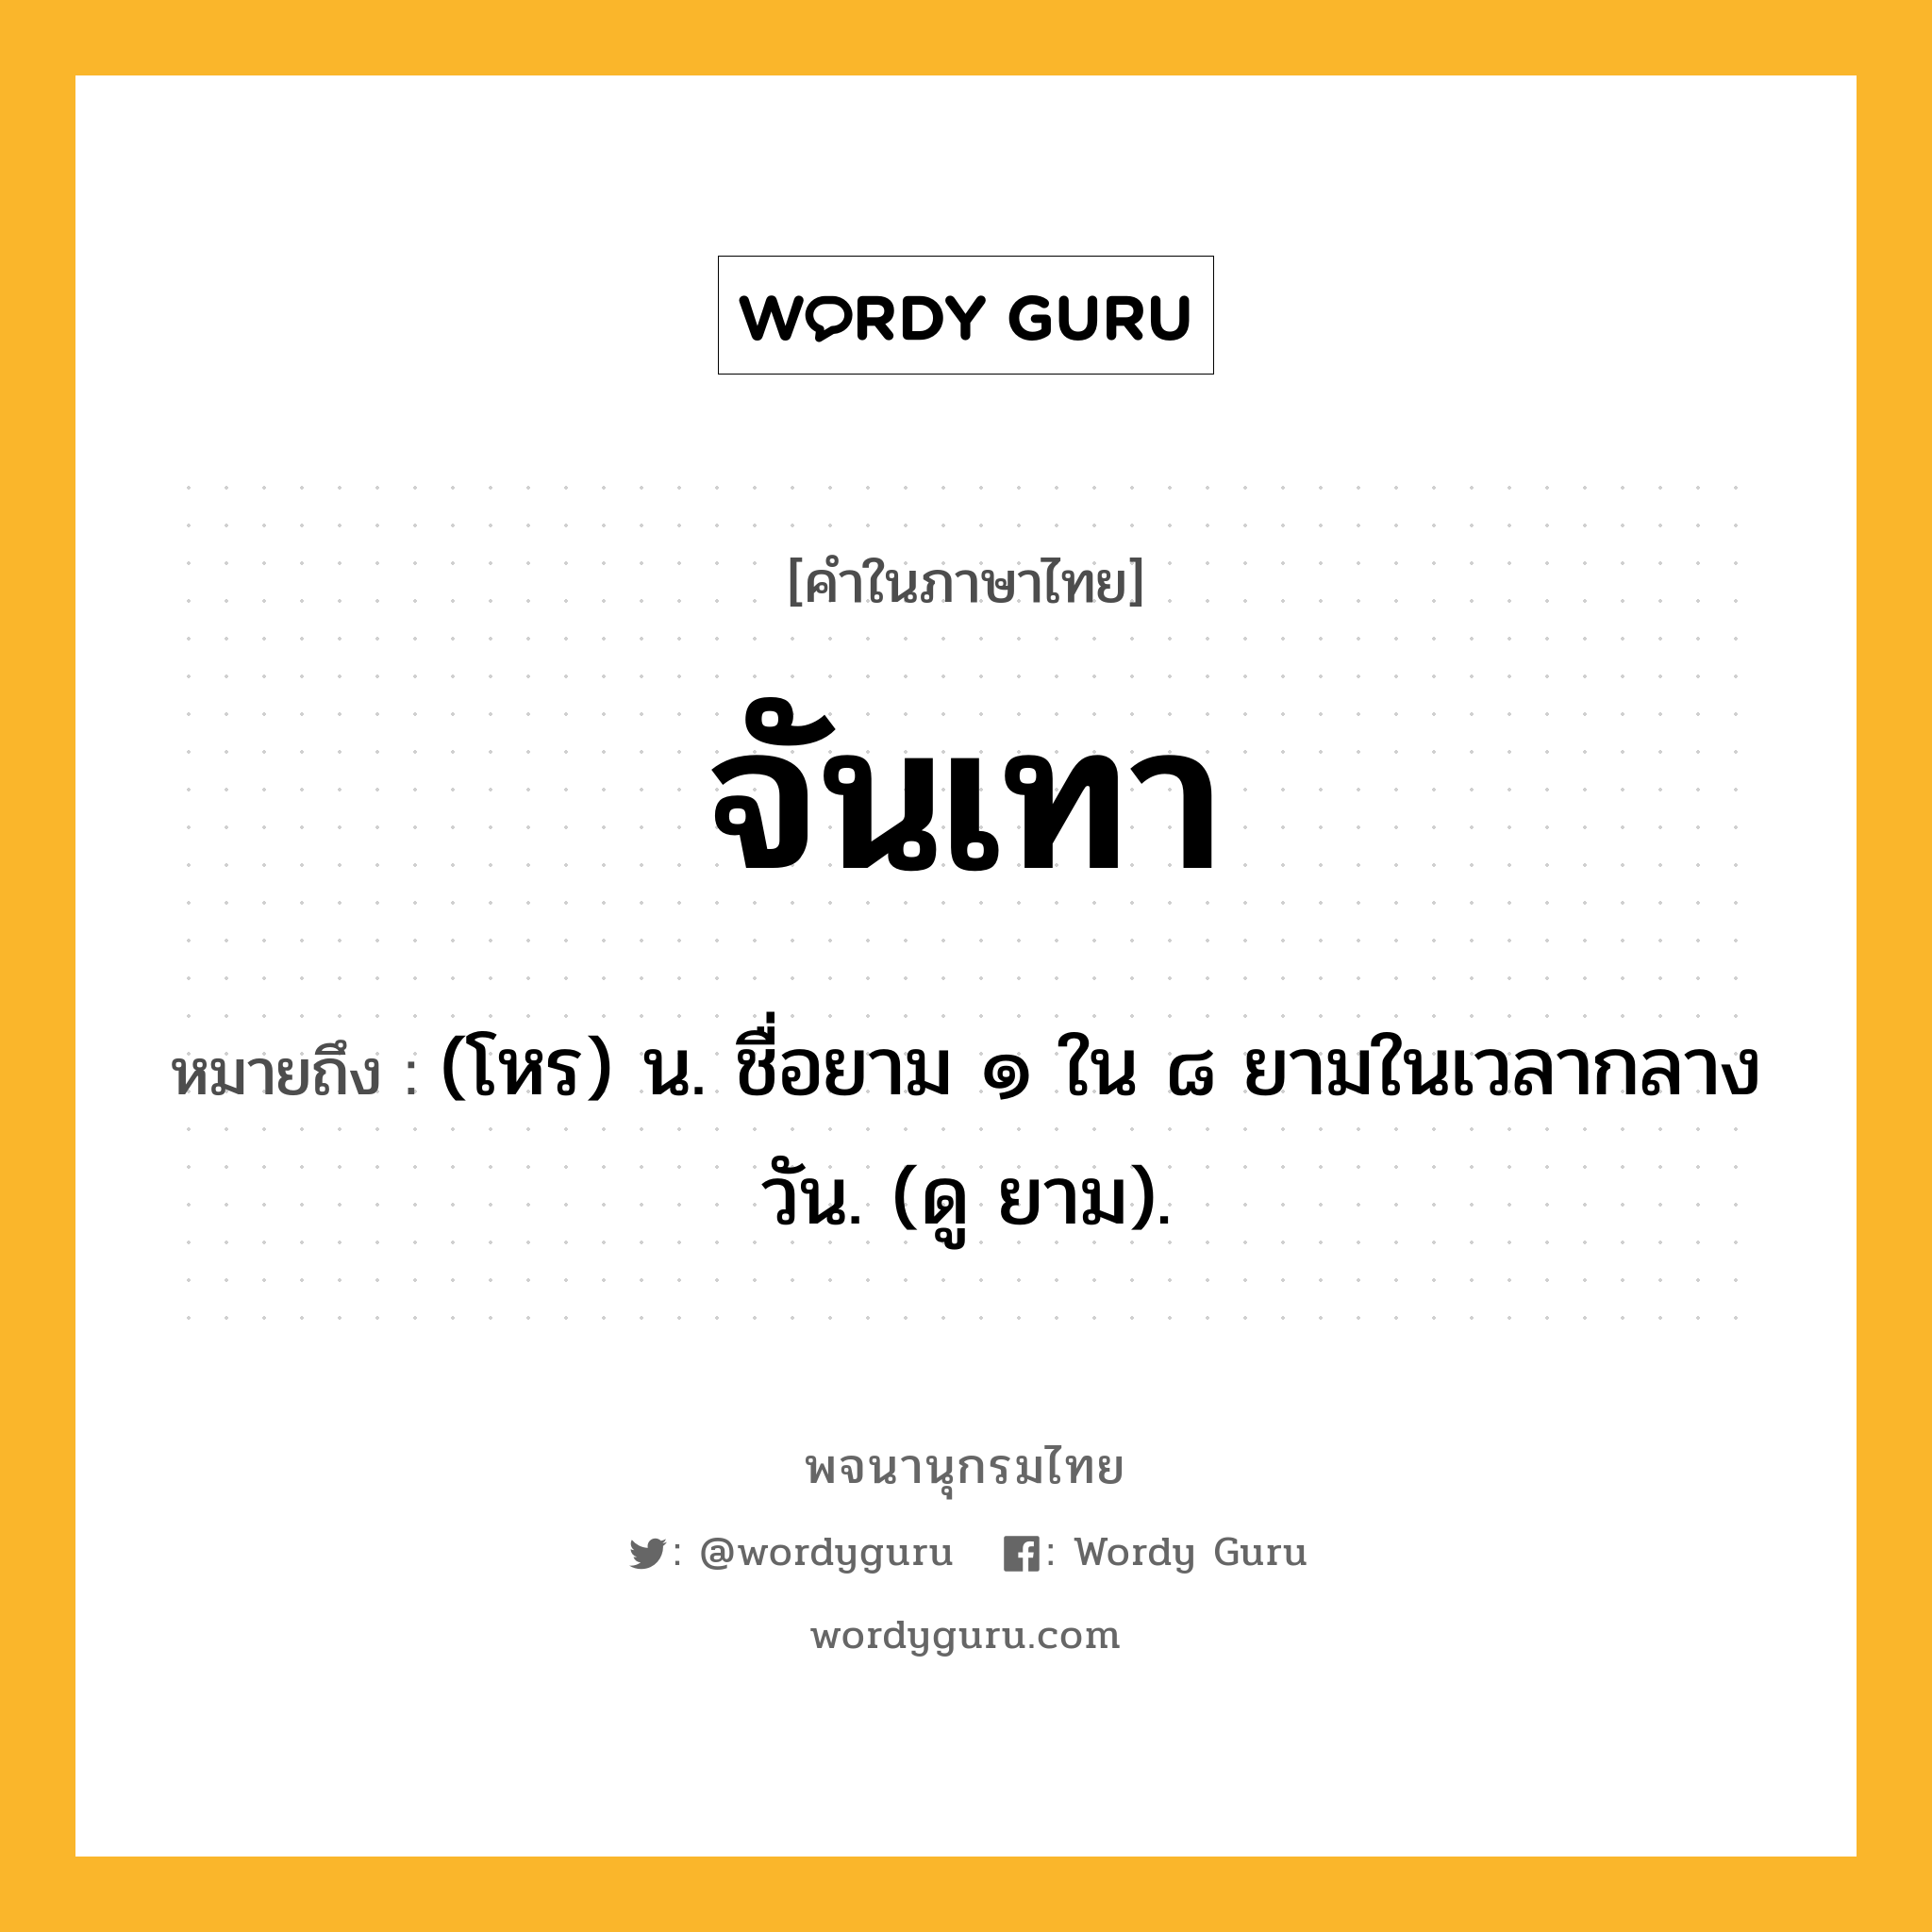 จันเทา ความหมาย หมายถึงอะไร?, คำในภาษาไทย จันเทา หมายถึง (โหร) น. ชื่อยาม ๑ ใน ๘ ยามในเวลากลางวัน. (ดู ยาม).